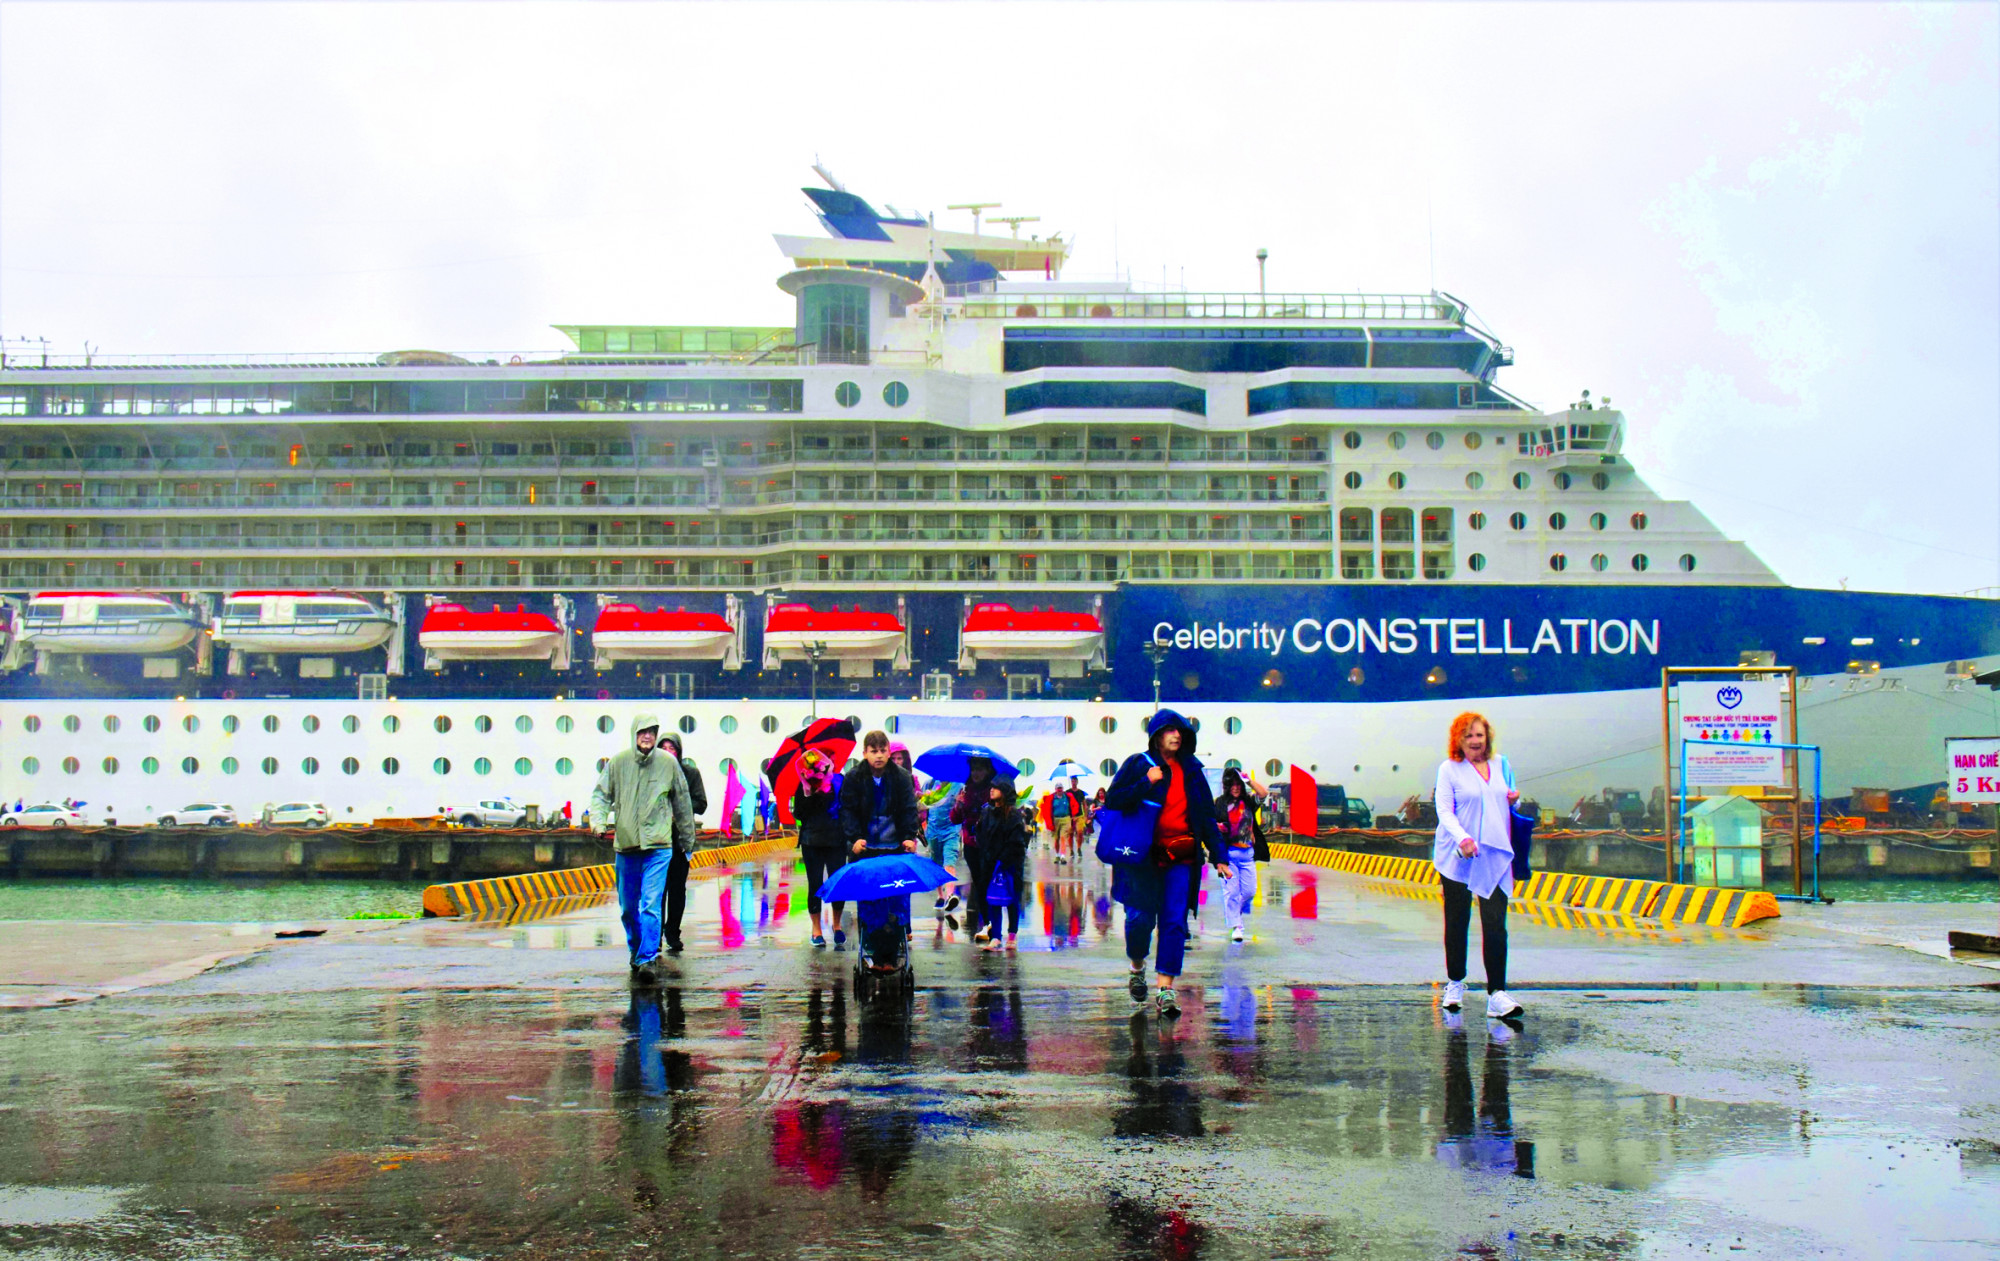 Tàu biển cao cấp Celebrity Constellation cập cảng Chân Mây (Thừa Thiên - Huế) đưa khách quốc tế tham quan các di sản văn hóa thế giới tại miền Trung năm 2019, khi chưa có dịch COVID-19 ẢNH: THUẬN HÓA